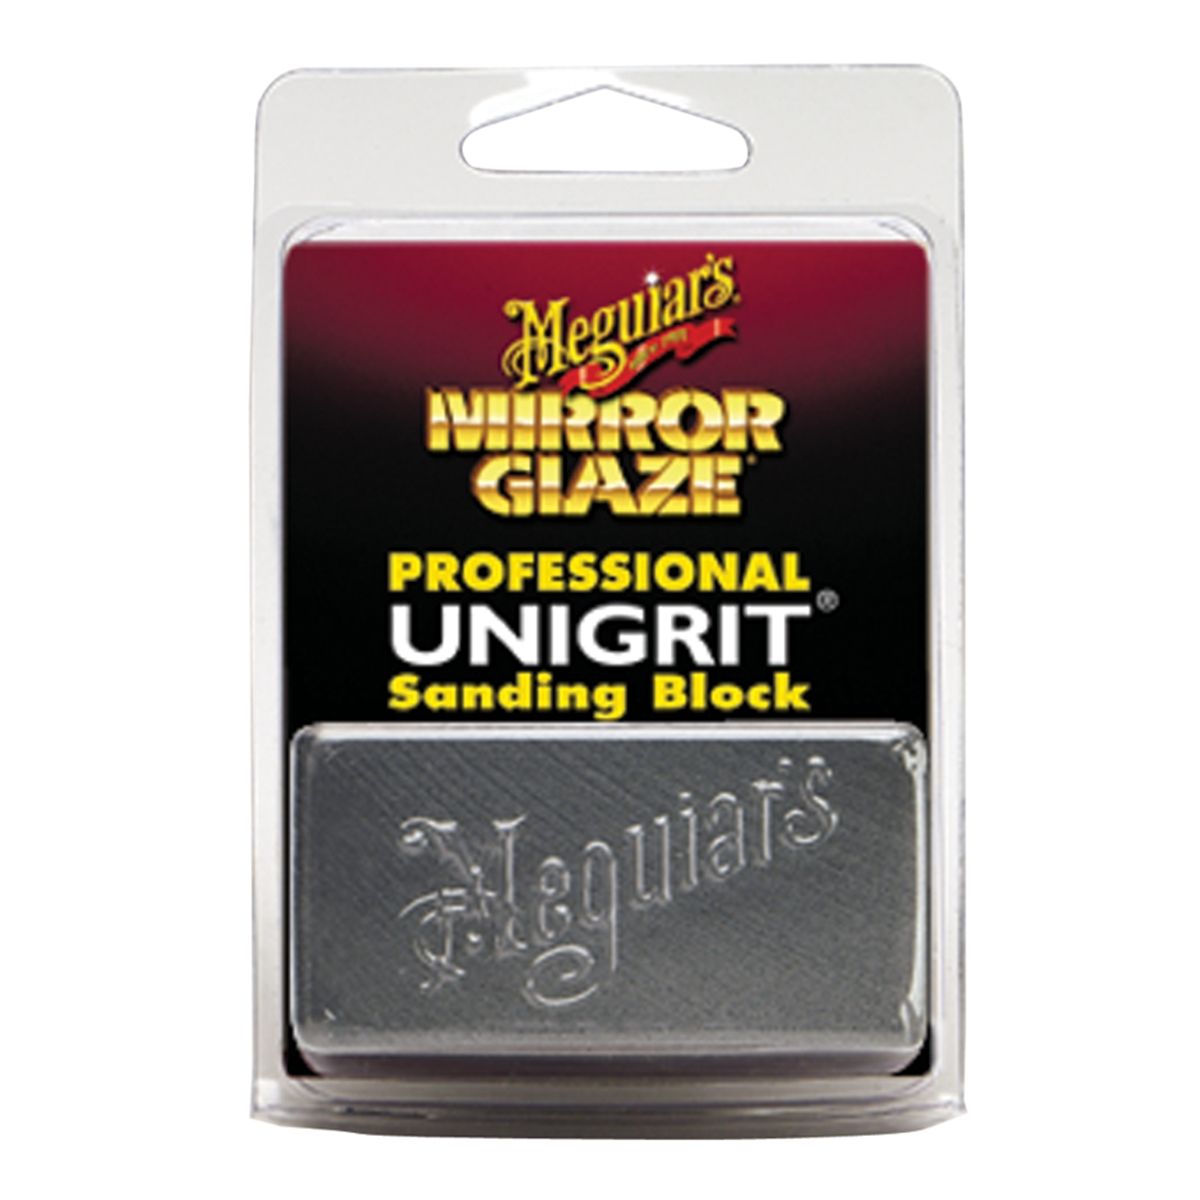 Unigrit Sanding Block - 1500 Grit